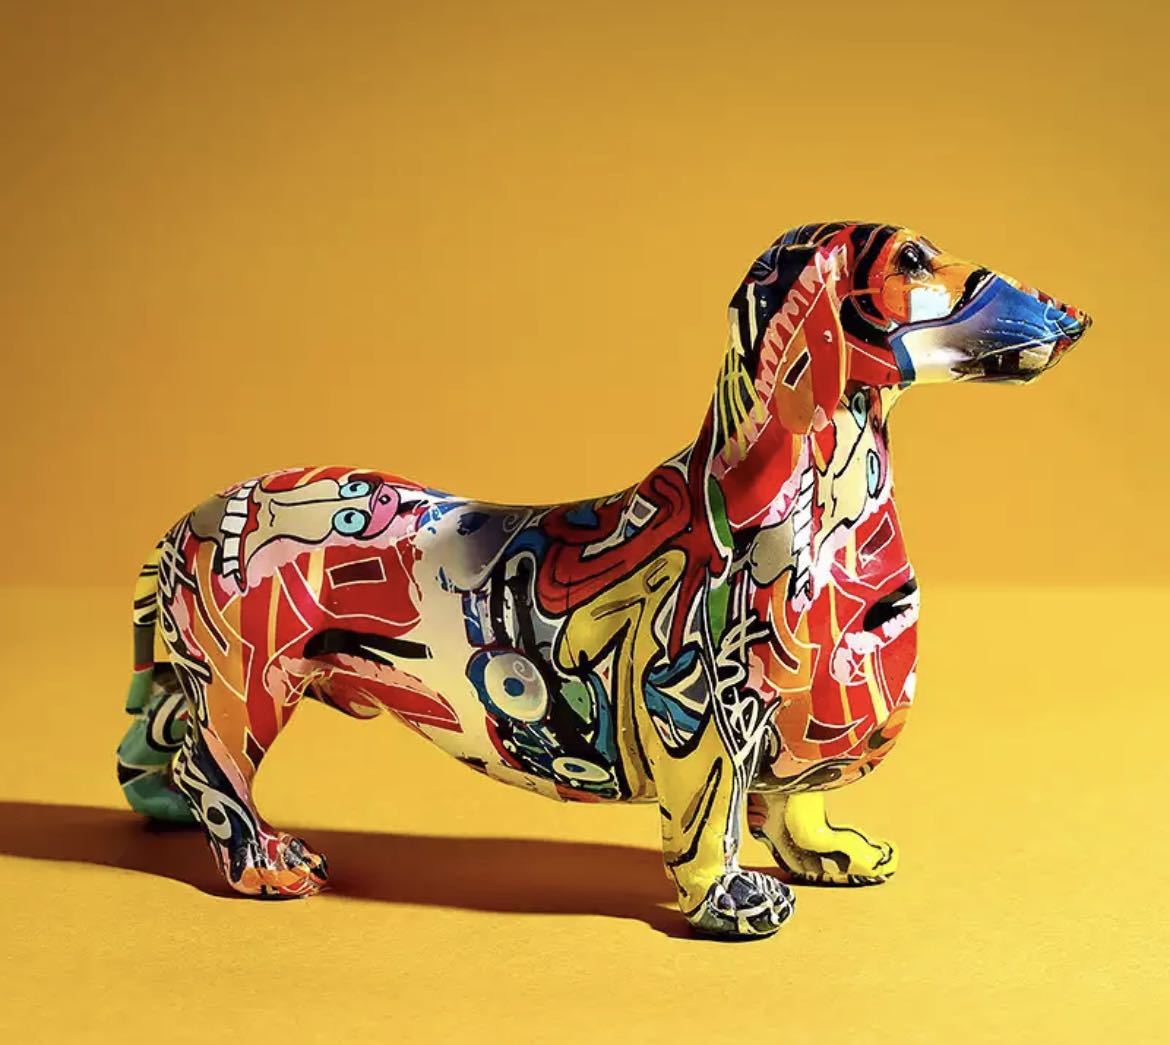 كلب ألماني صغير الحجم مطلي بحجم كبير, كلب ألماني, الكتابة على الجدران, كلب, الديكور الداخلي, هدف, فن معاصر, فن, زخرفة, ملحق, الفني 554, العناصر اليدوية, الداخلية, بضائع متنوعة, زخرفة, هدف